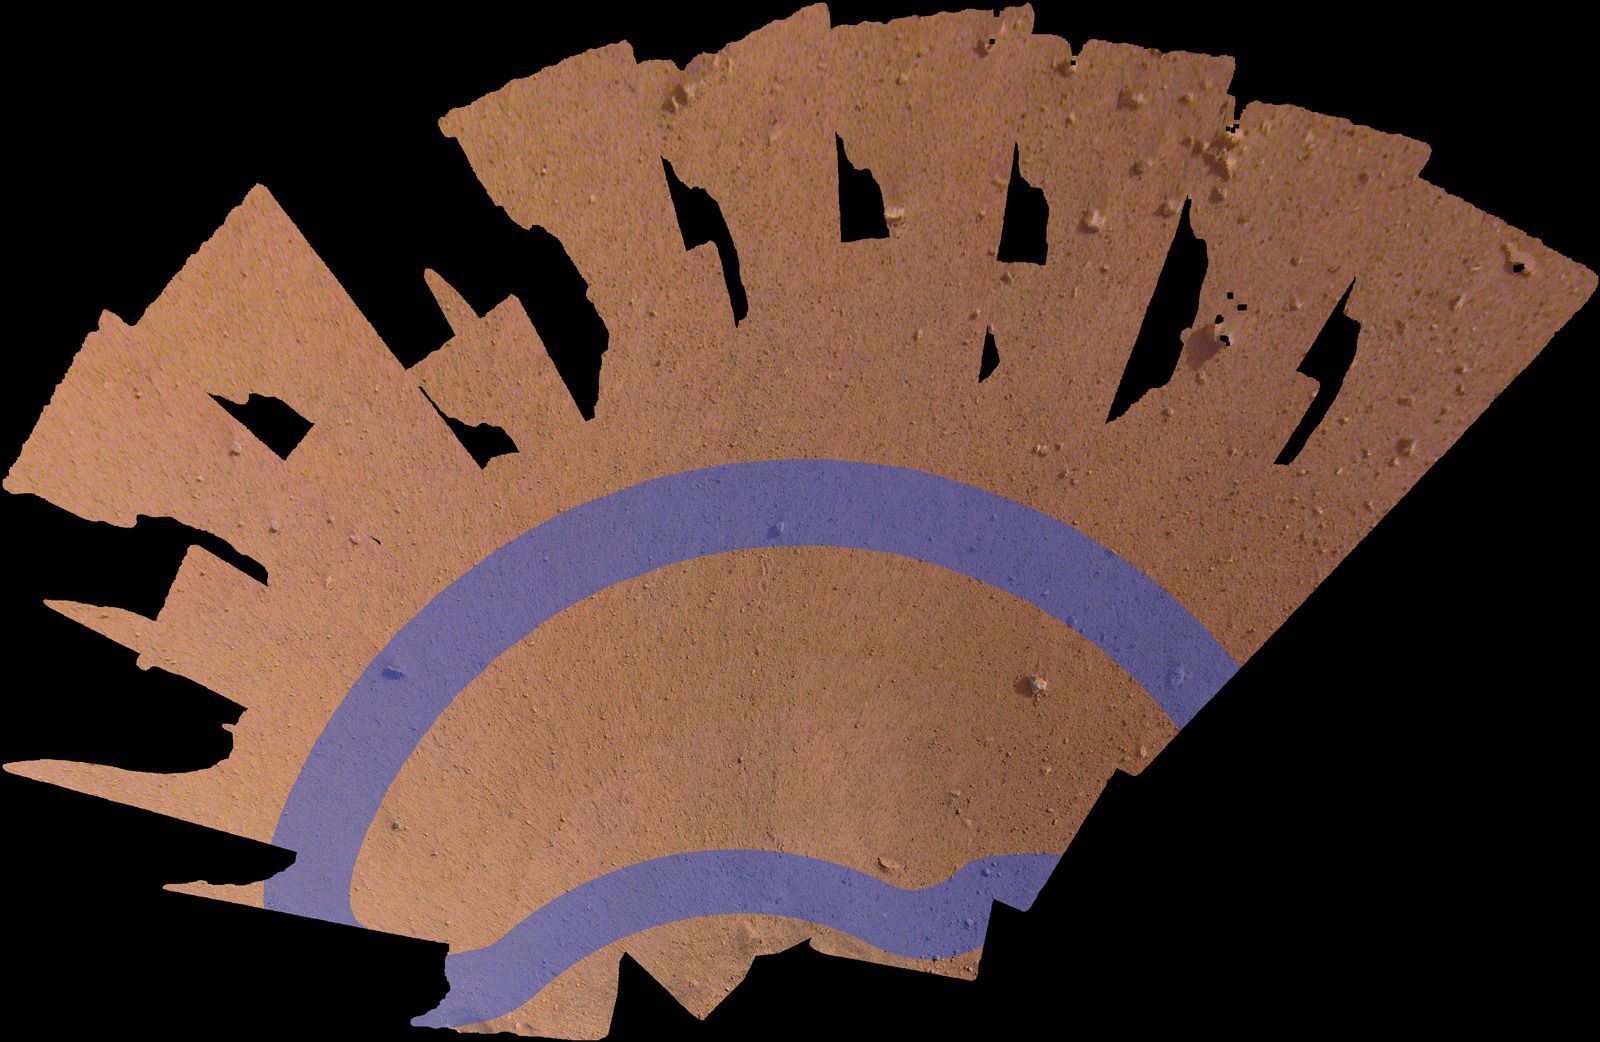 Марсіанське селфі: зонд InSight надіслав на Землю фото. Посадочна платформа надіслала на Землю своє селфі, складене з кадрів, зроблених за допомогою роботизованої руки.